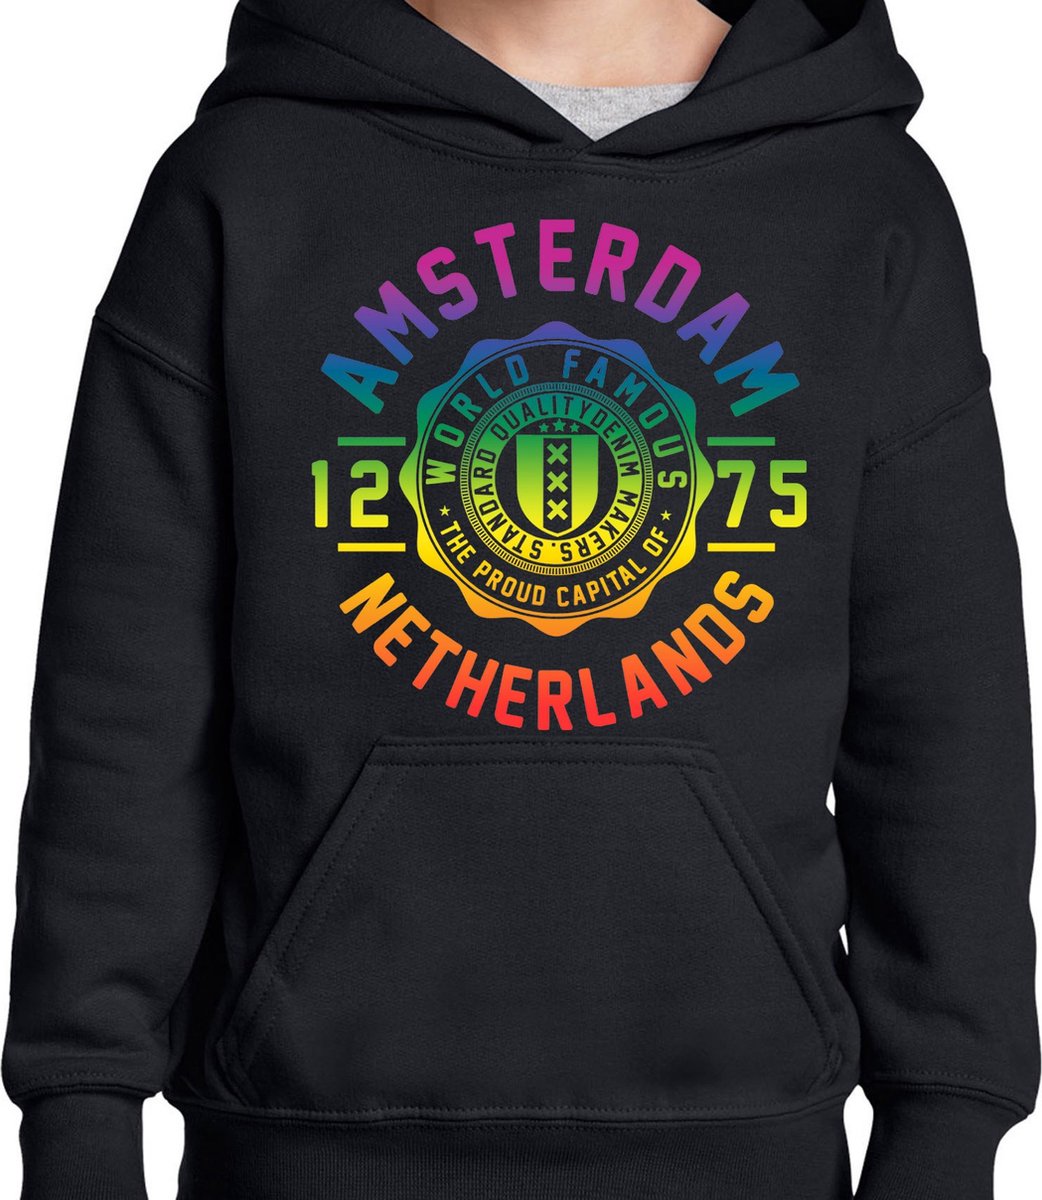 Hooded Sweater - Met Trekkoord - Capuchon - Chill - Trui - Vest - met capuchon - Outdoor - Gay Pride - Pride Rainbow - Regenboog - Amsterdam - World Famous - Zwart - Maat L